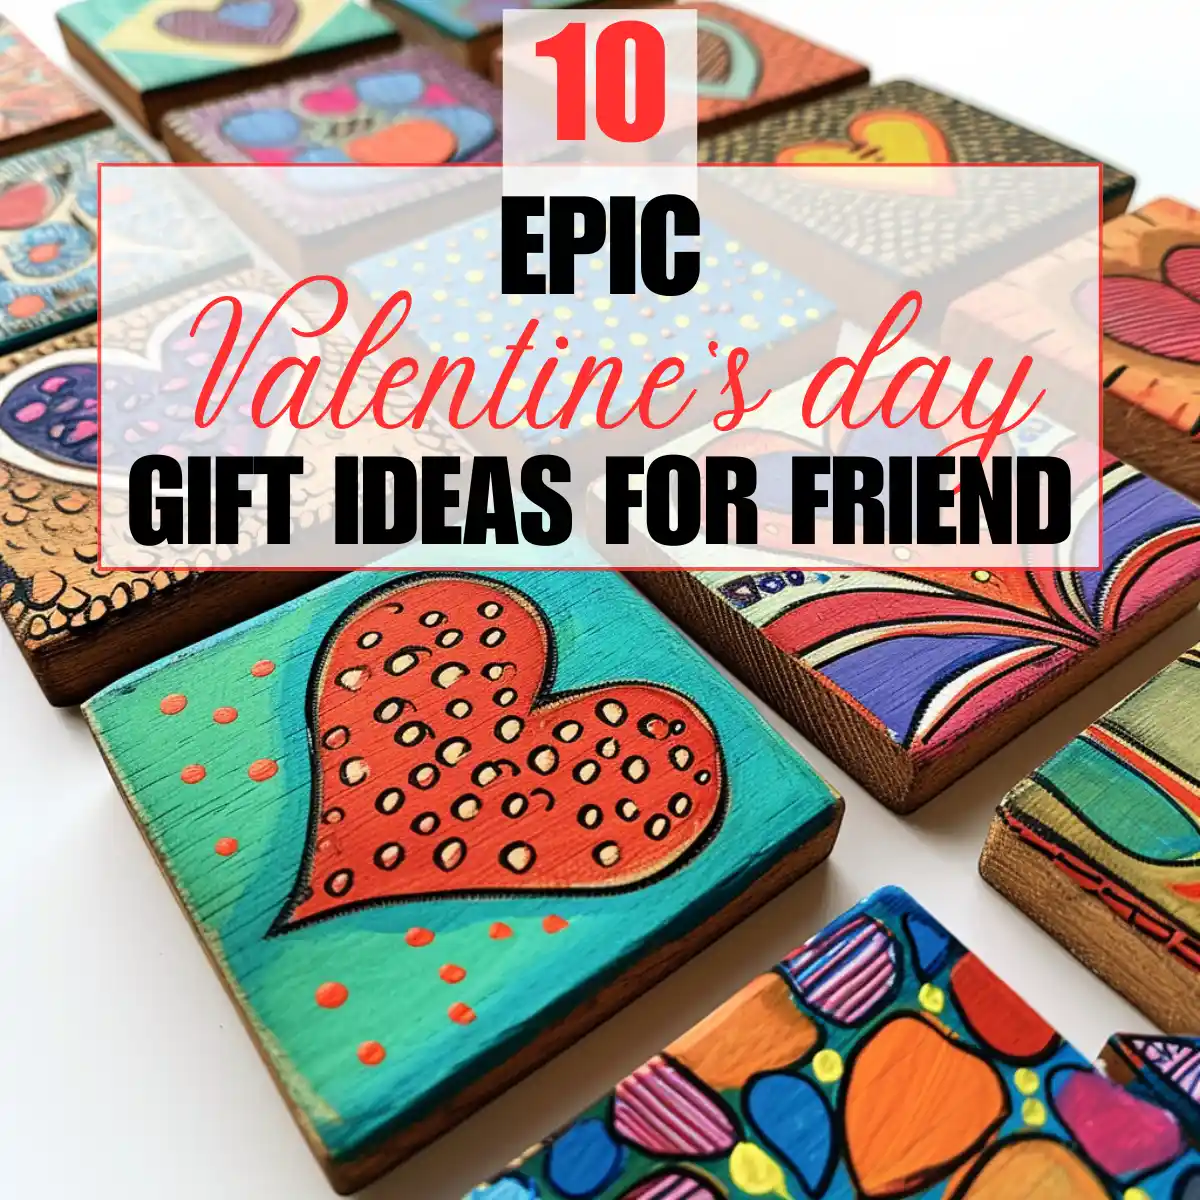 Valentine's wooden gift ideas for friend